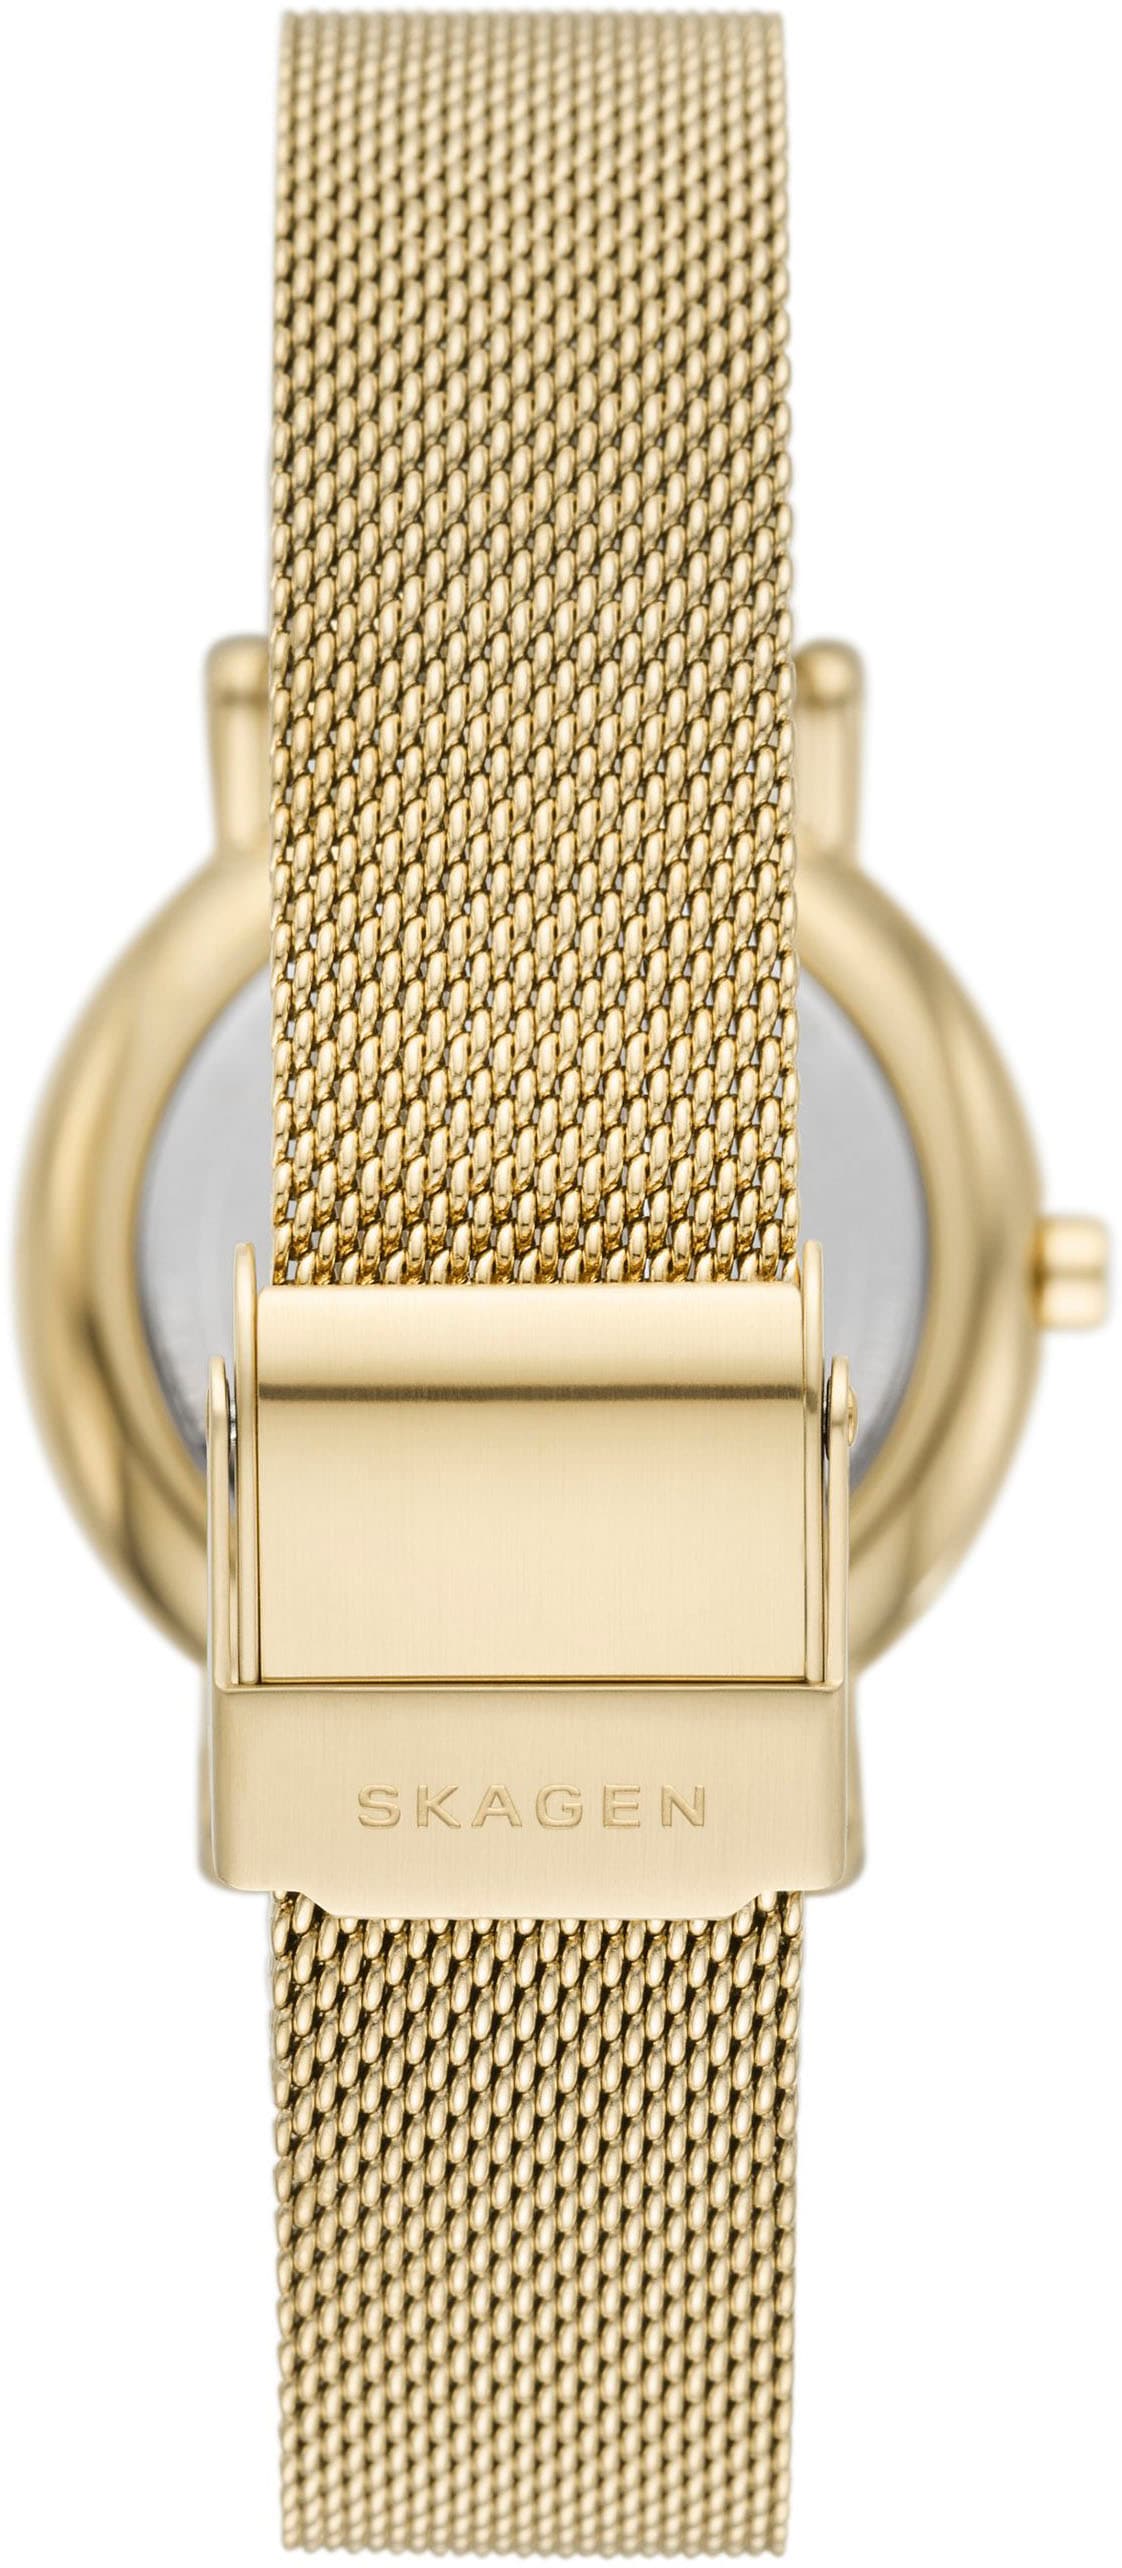 Skagen Quarzuhr »SIGNATUR LILLE, SKW3117«, Armbanduhr, Damenuhr, analog, Edelstahlarmband